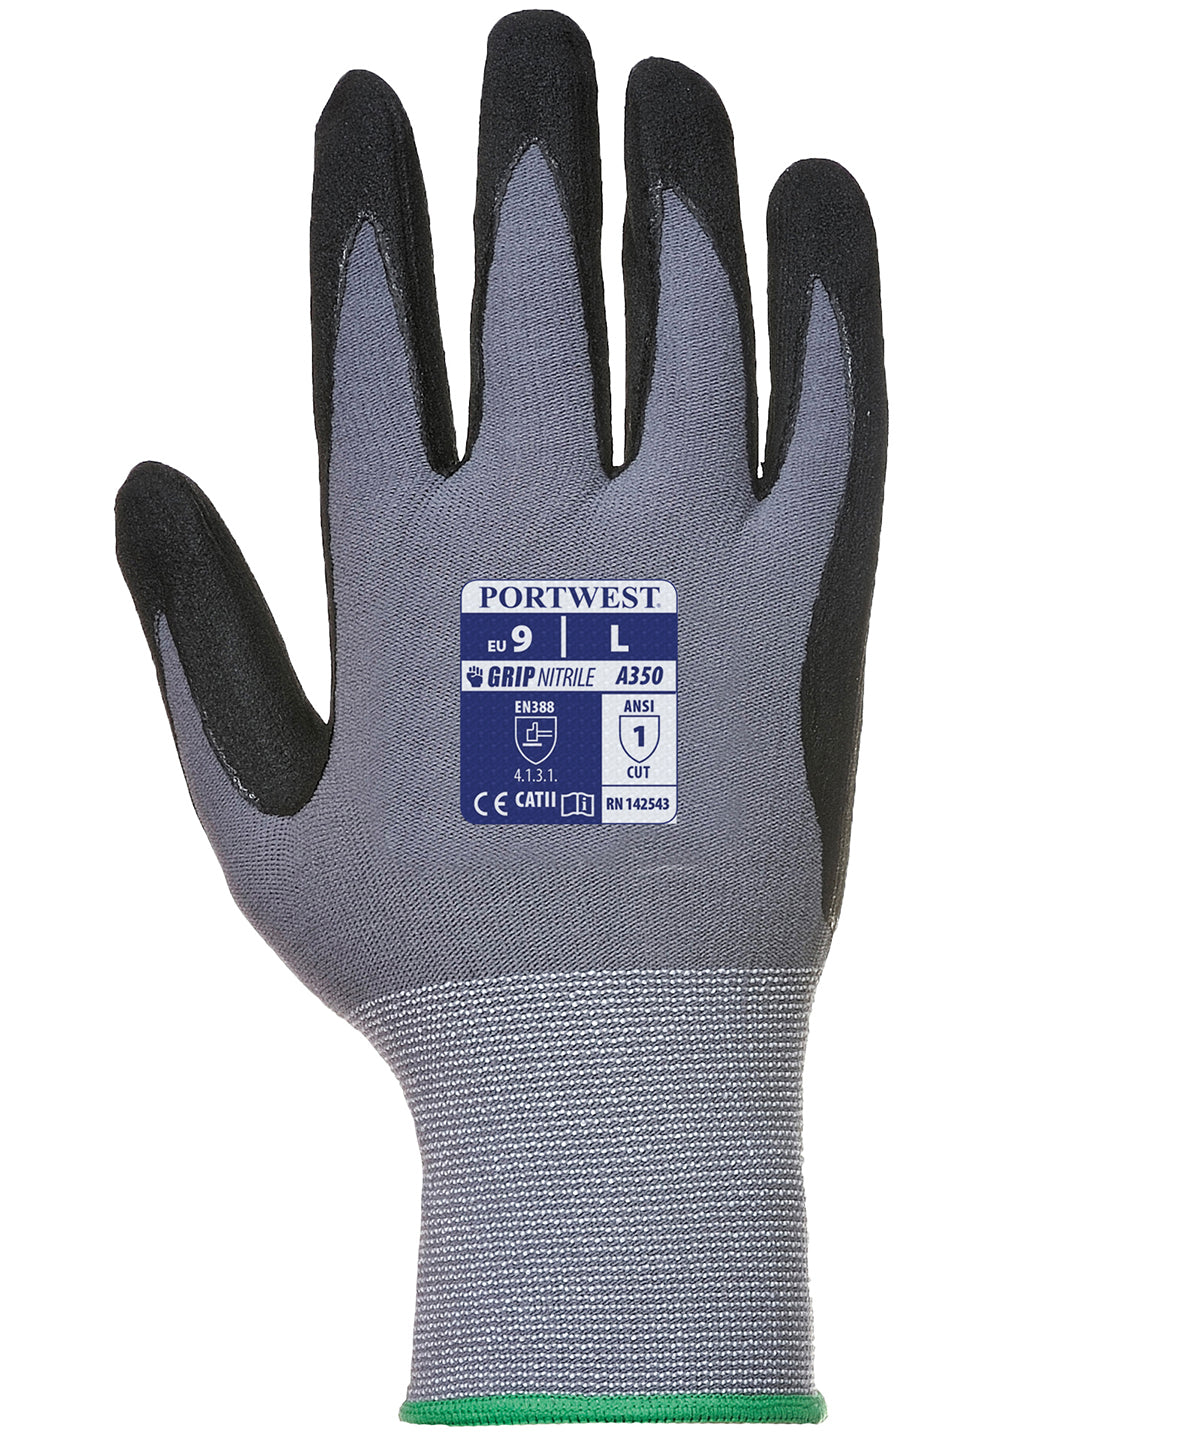 Portwest Dermiflex glove